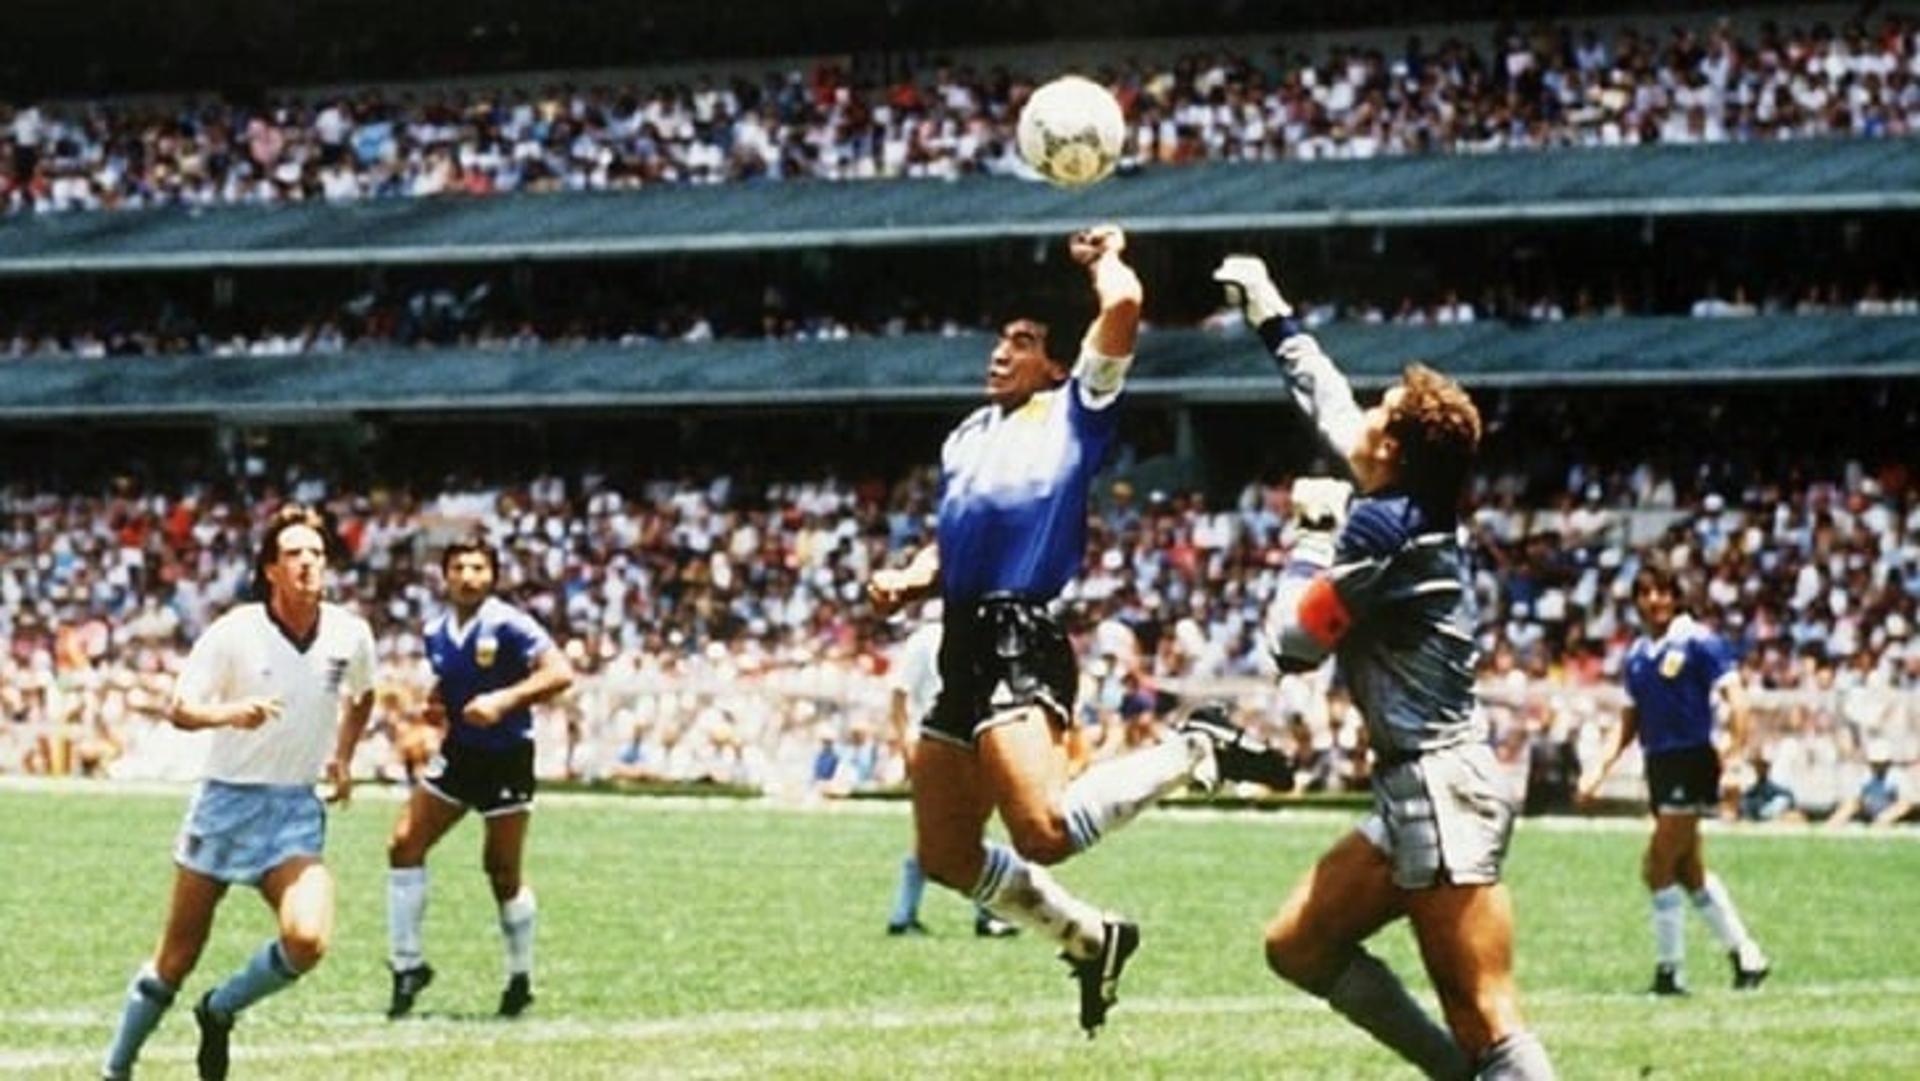 Há exatos 25 anos, Maradona fazia seu último jogo na Copa do Mundo. O camisa 10 se despediu em uma partida contra a Nigéria, ainda na fase de grupos da Copa de 94. Após a partida, o argentino foi pego no doping e deixou a delegação albiceleste. O LANCE! relembrou as partidas do craque em Mundiais.